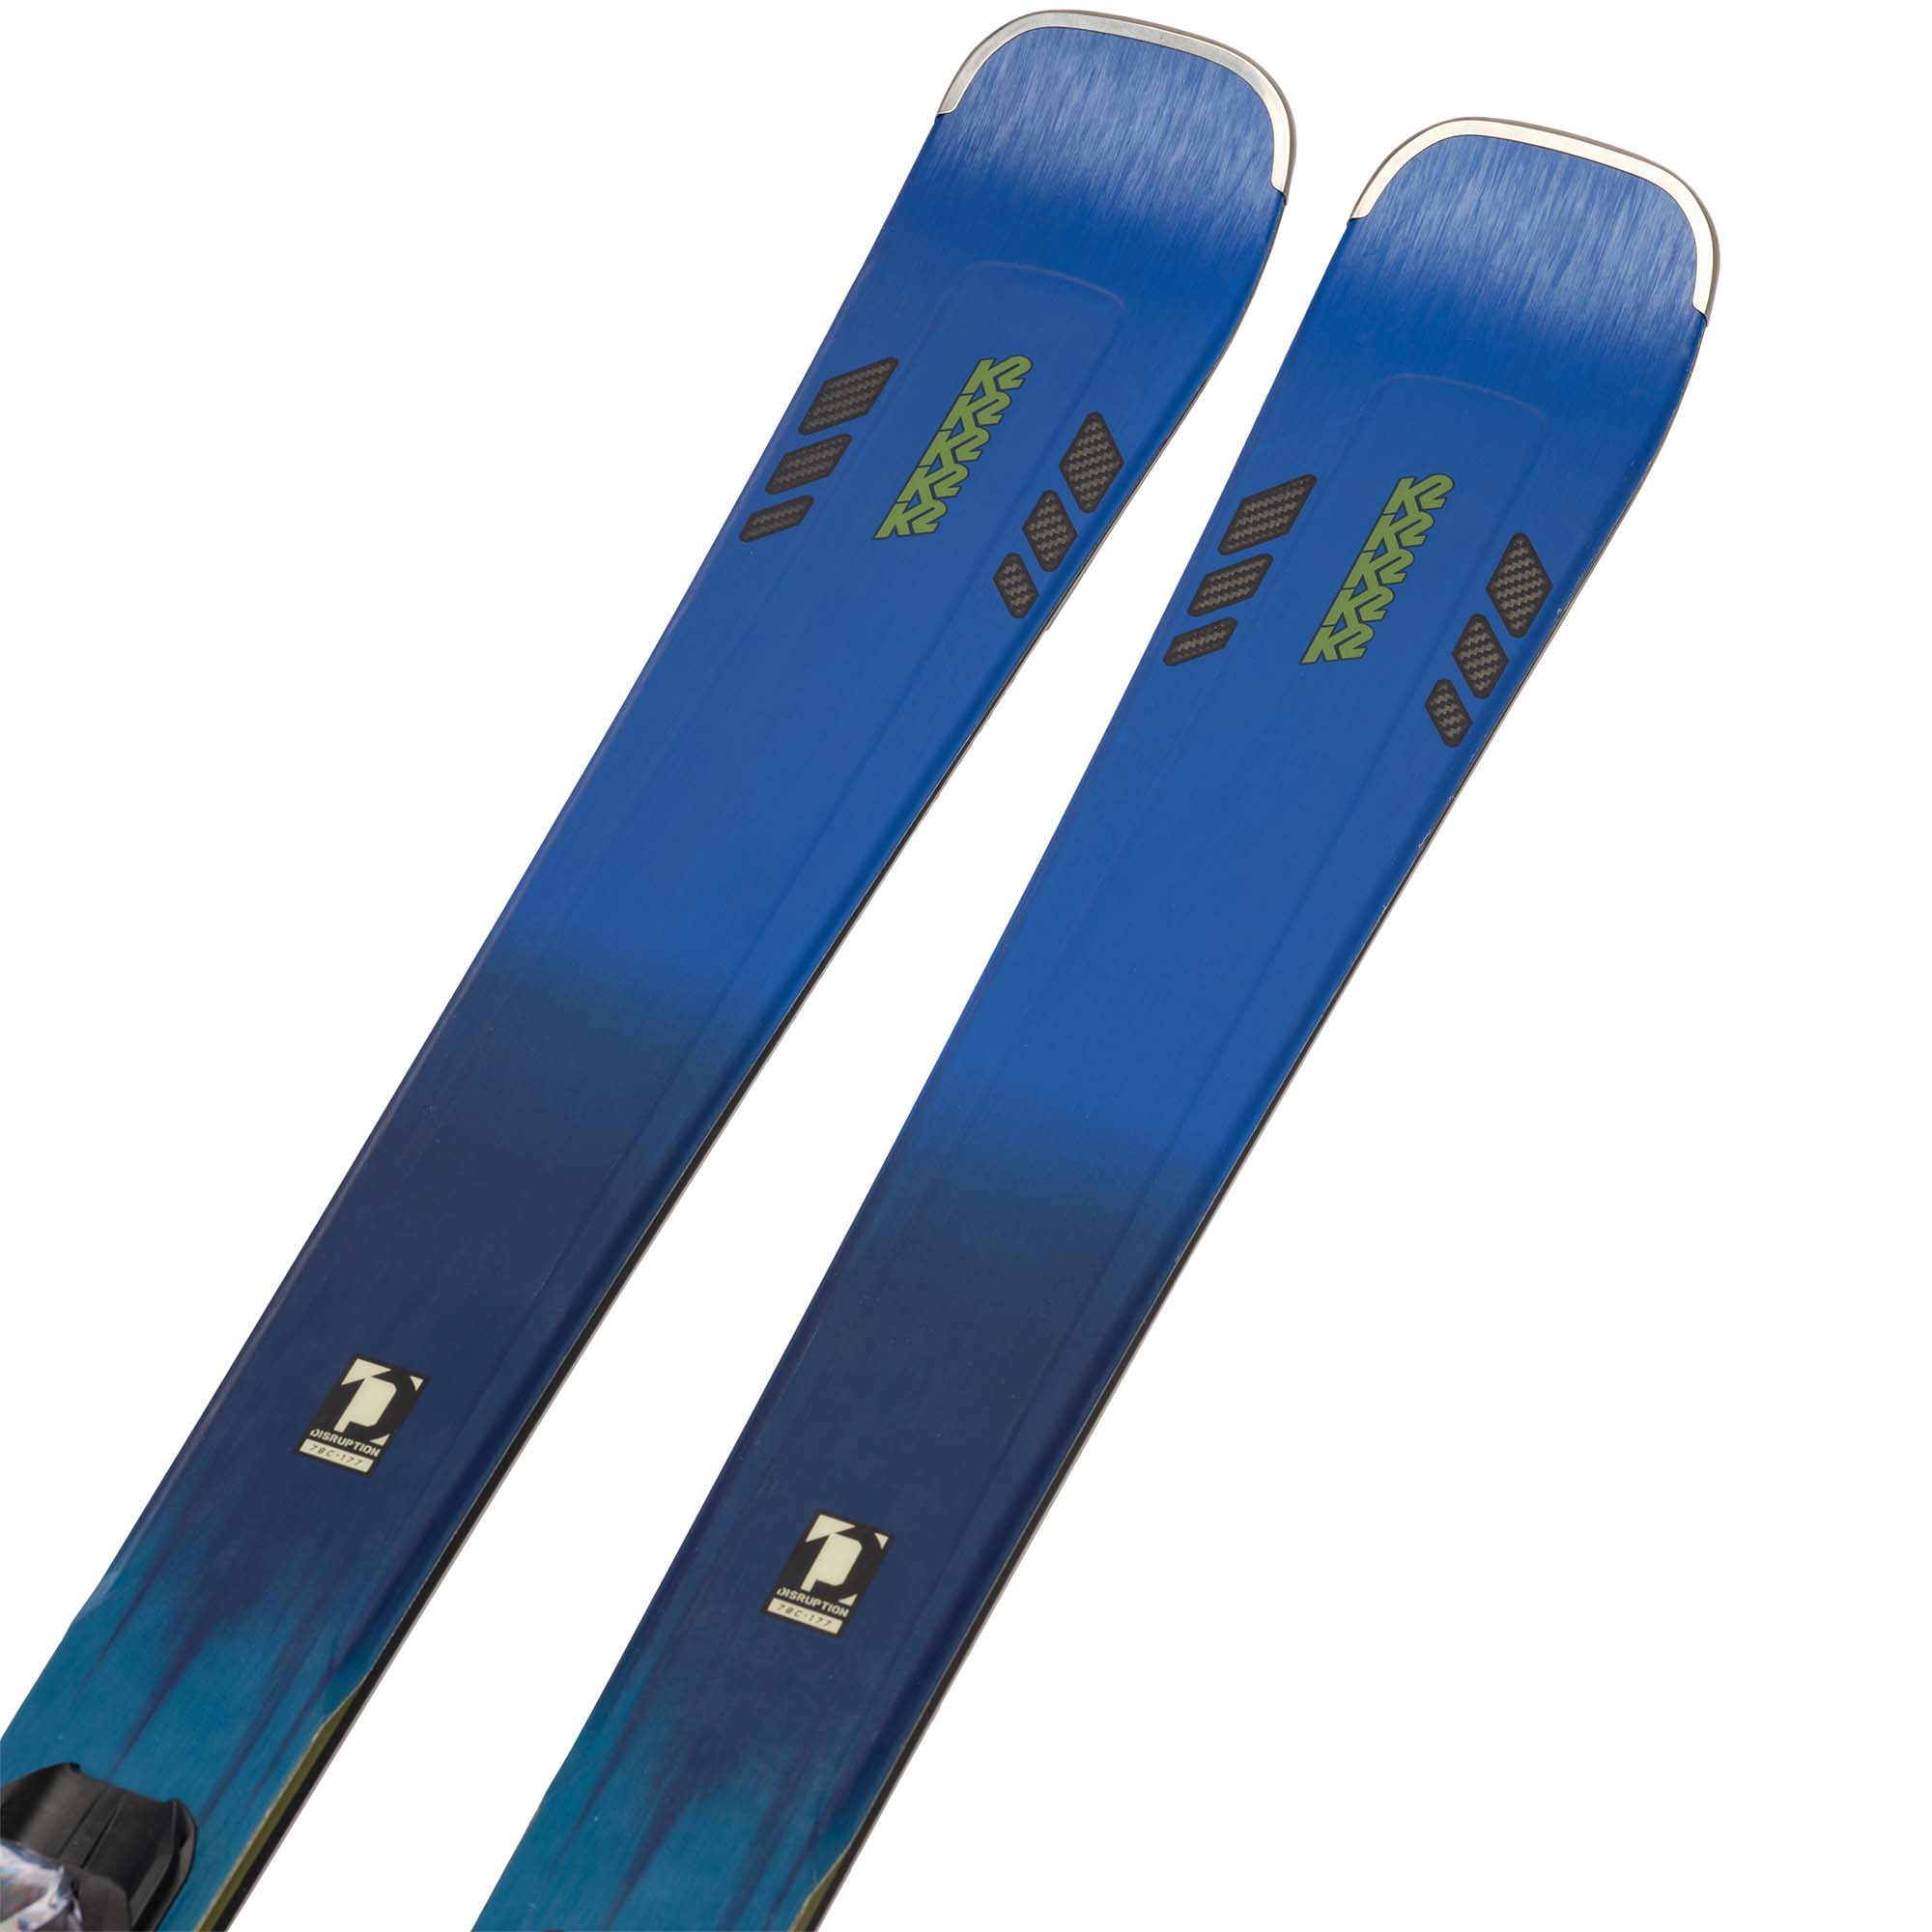 K2 Disruption 78C + M3 11 Compact Quikclik Skis